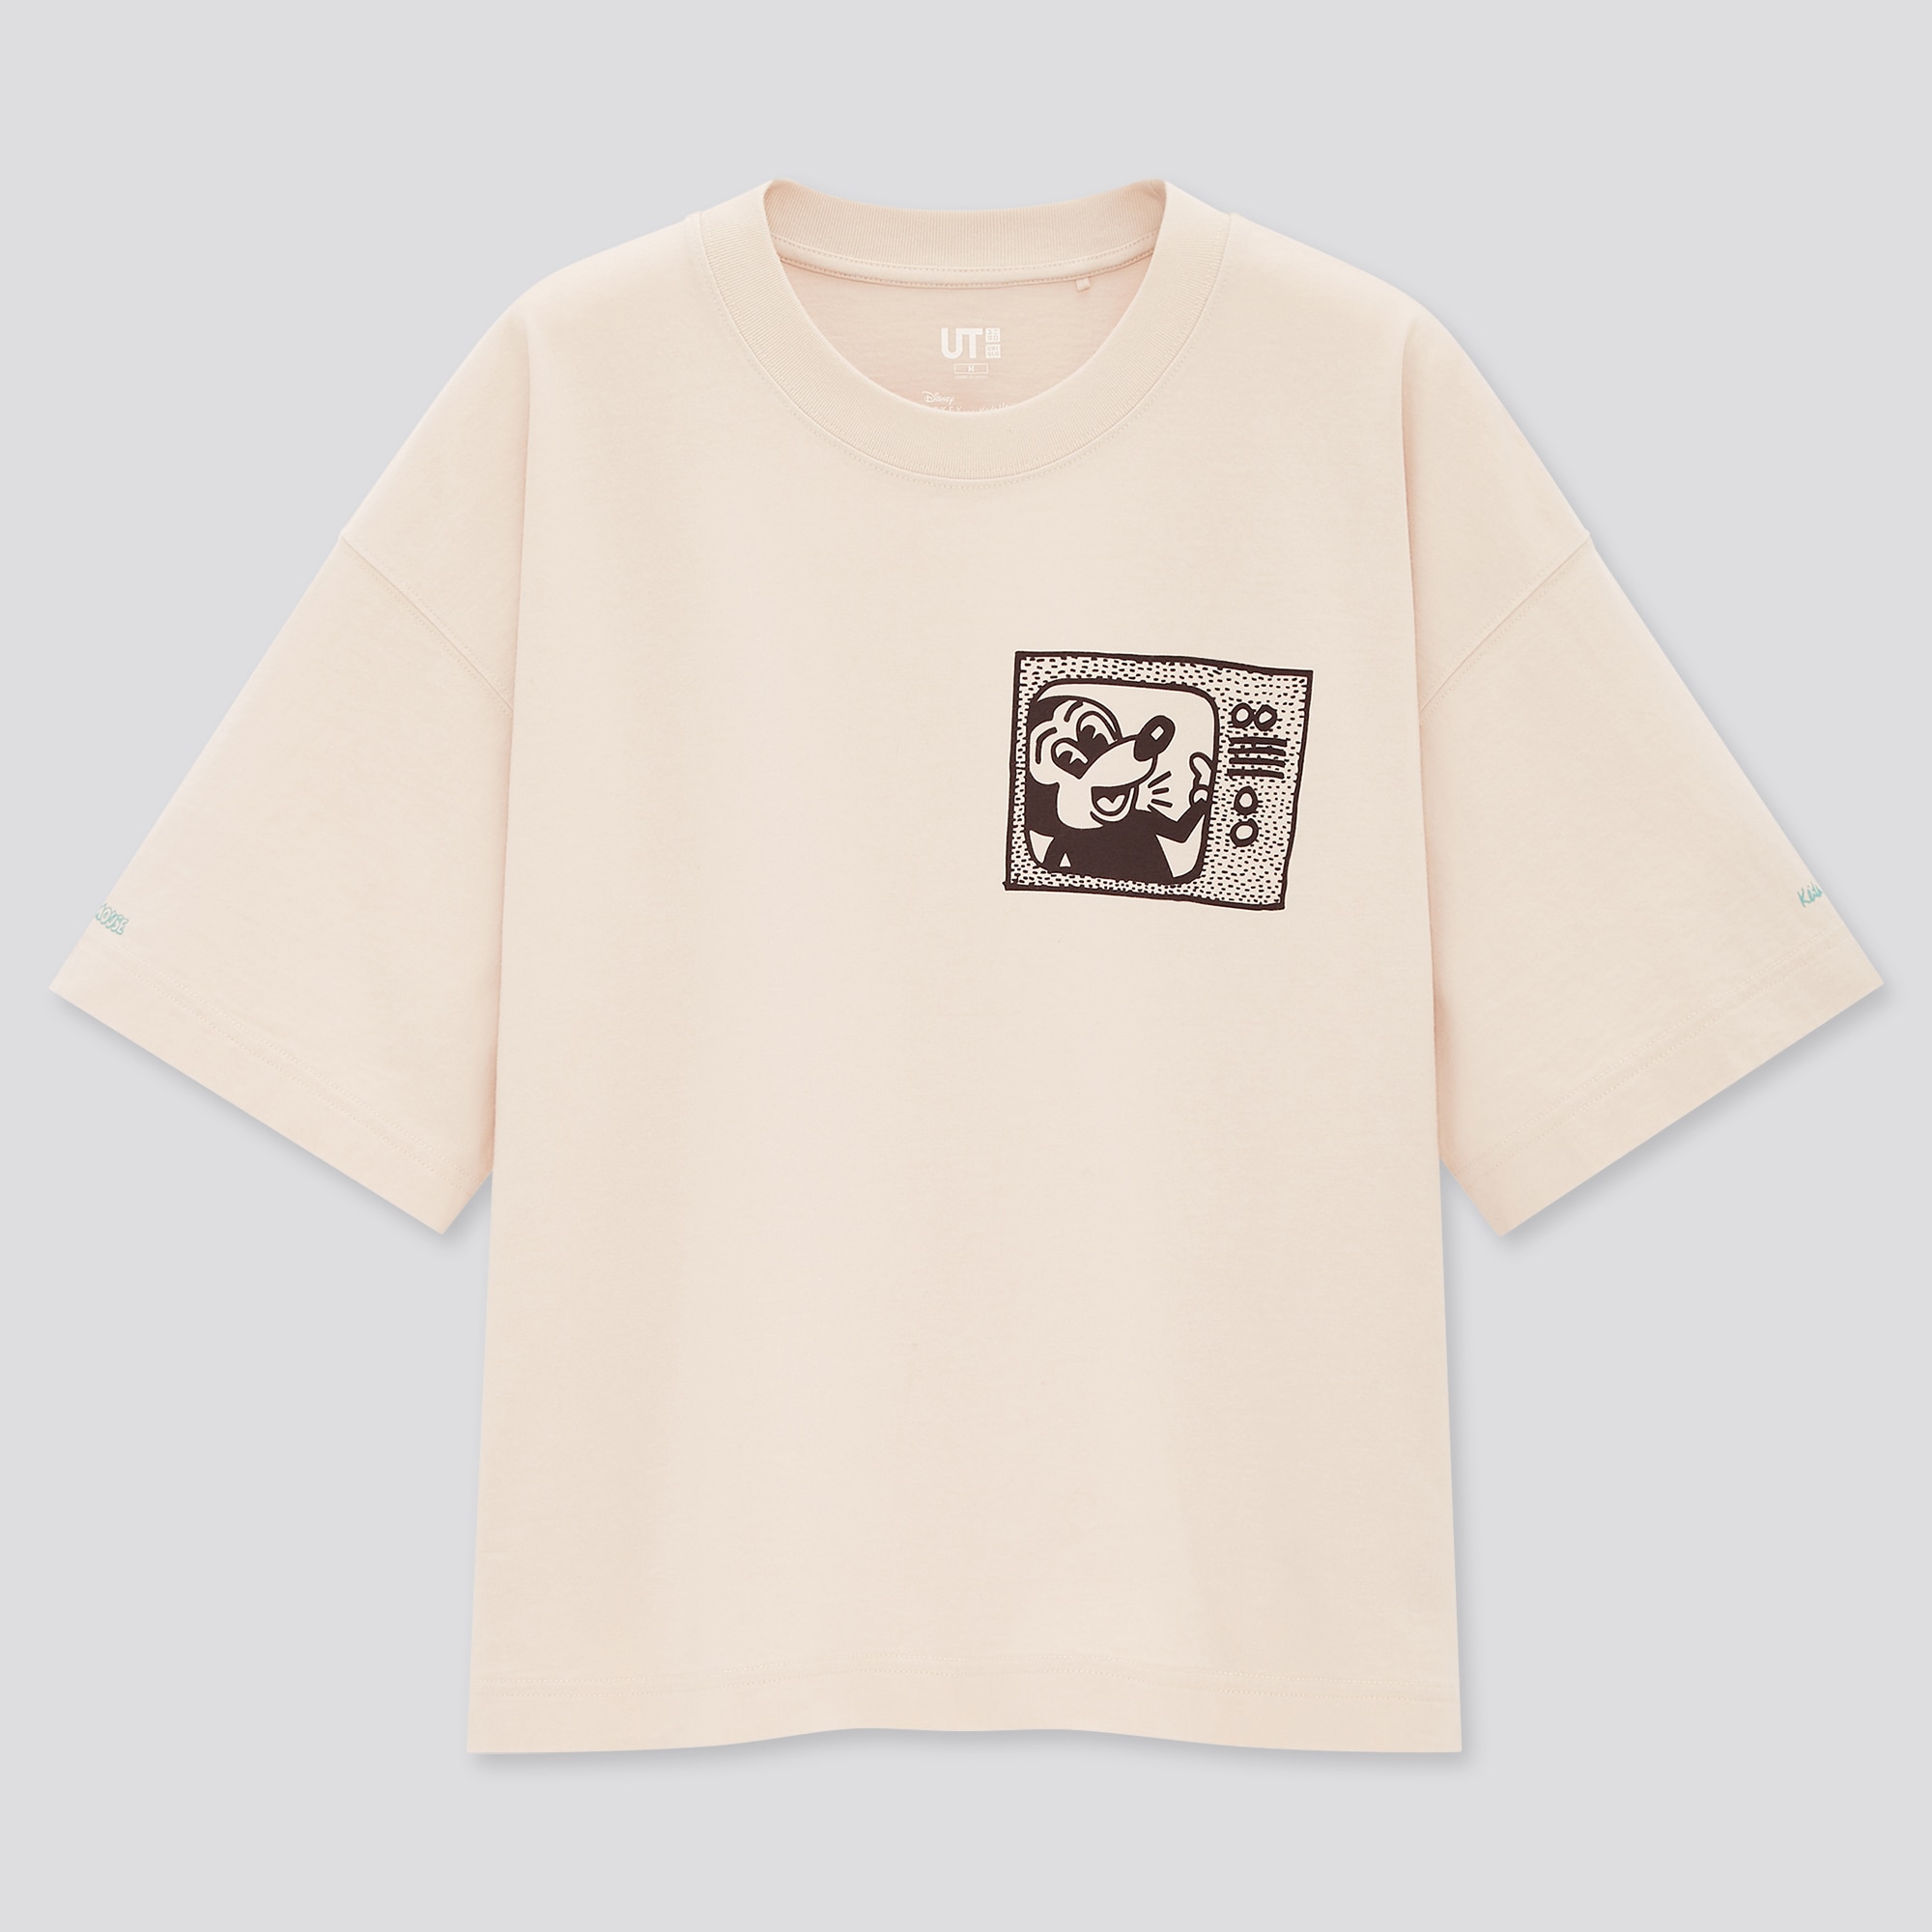 Uniqloのミッキーマウス キース へリング Ut グラフィックtシャツ 半袖 オーバーサイズフィット Stylehint